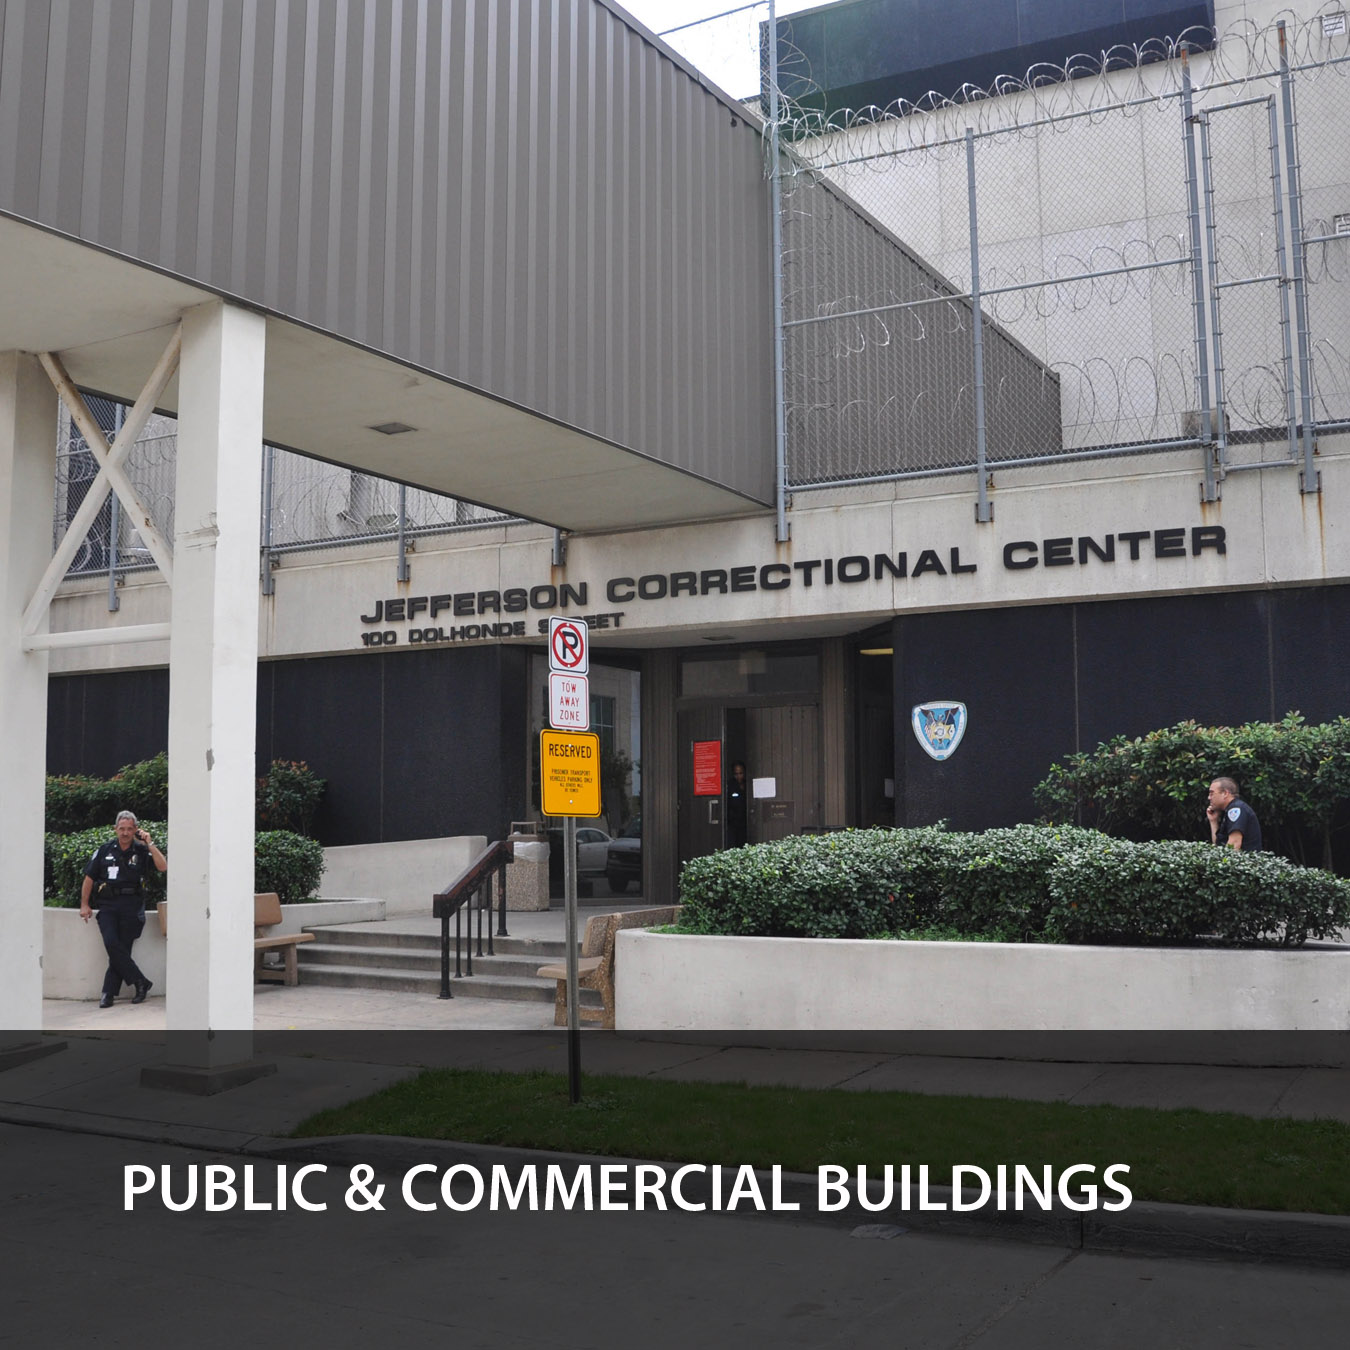 Public & Commercial Buildings